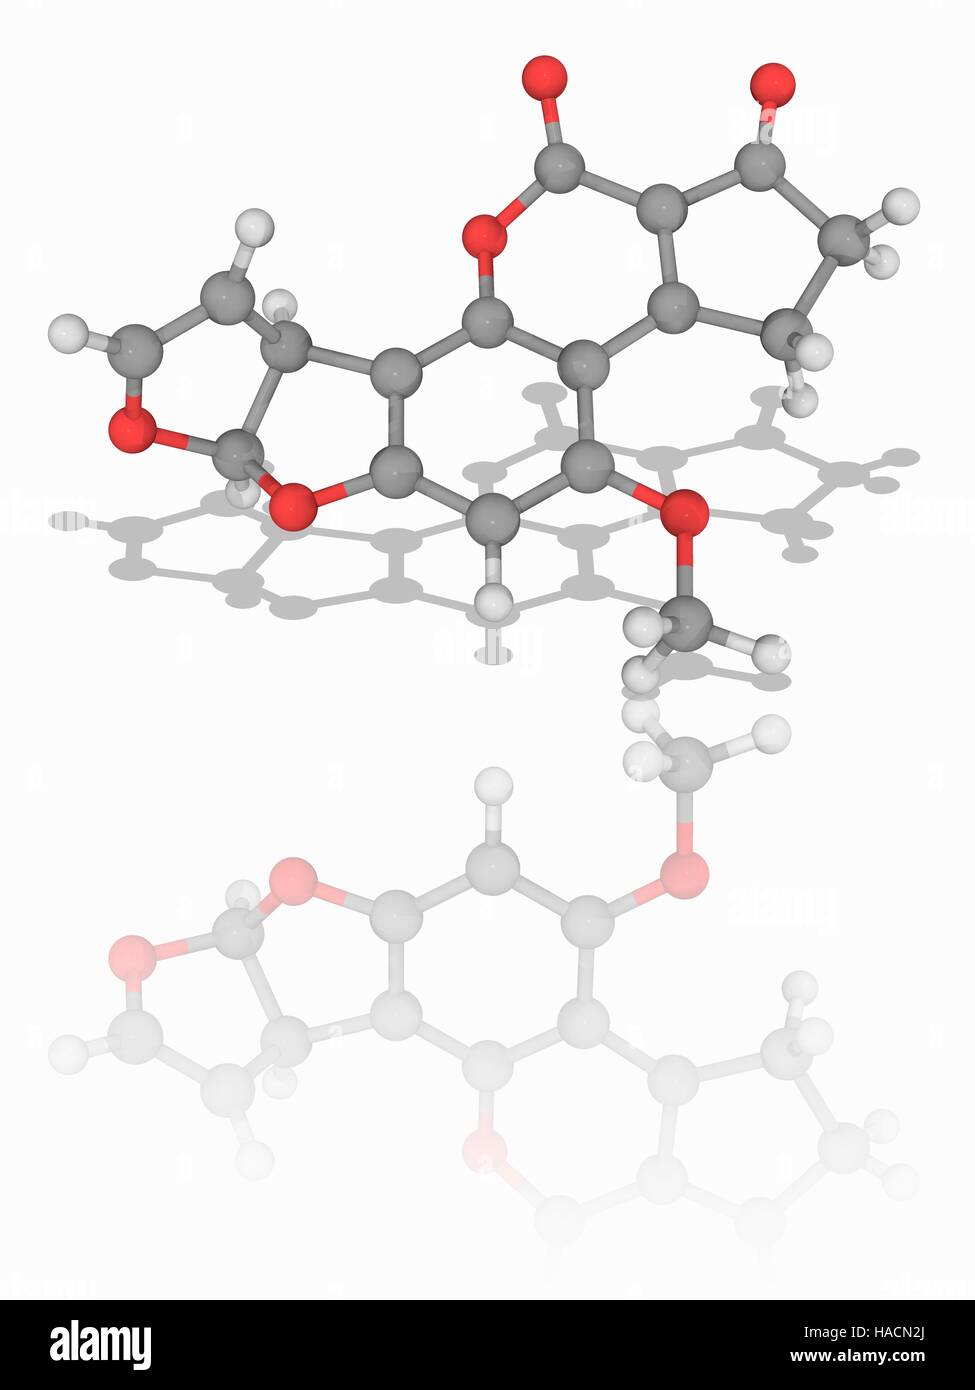 Aflatoxin B1. Molekulares Modell des Mykotoxin-Aflatoxin B1 (C17. H12. O6), produziert durch den Pilz Aspergillus Flavus. Diese Chemikalie ist extrem kanzerogene (krebserregende). Atome als Kugeln dargestellt werden und sind farblich gekennzeichnet: Kohlenstoff (grau), Wasserstoff (weiß) und Sauerstoff (rot). Abbildung. Stockfoto